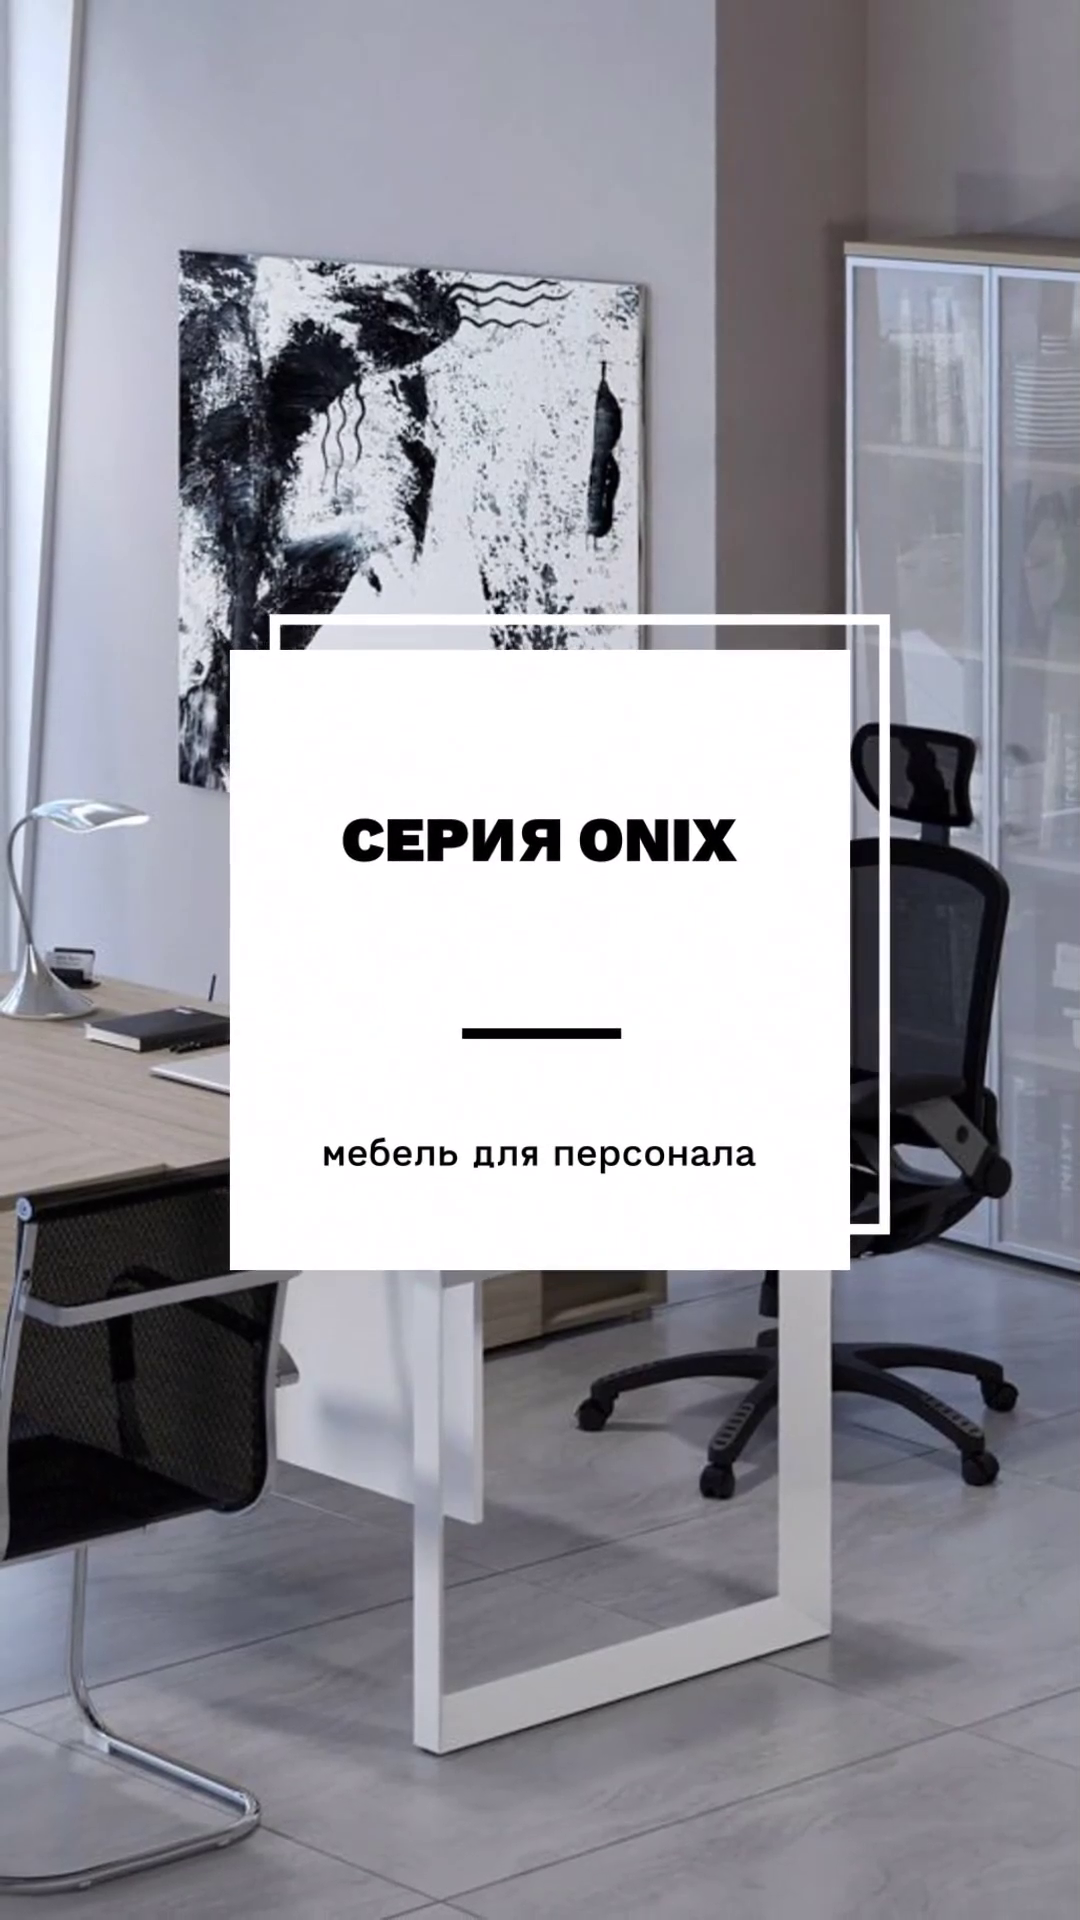 Офисная мебель ONIX — единство стиля и функциональности #RVGroup